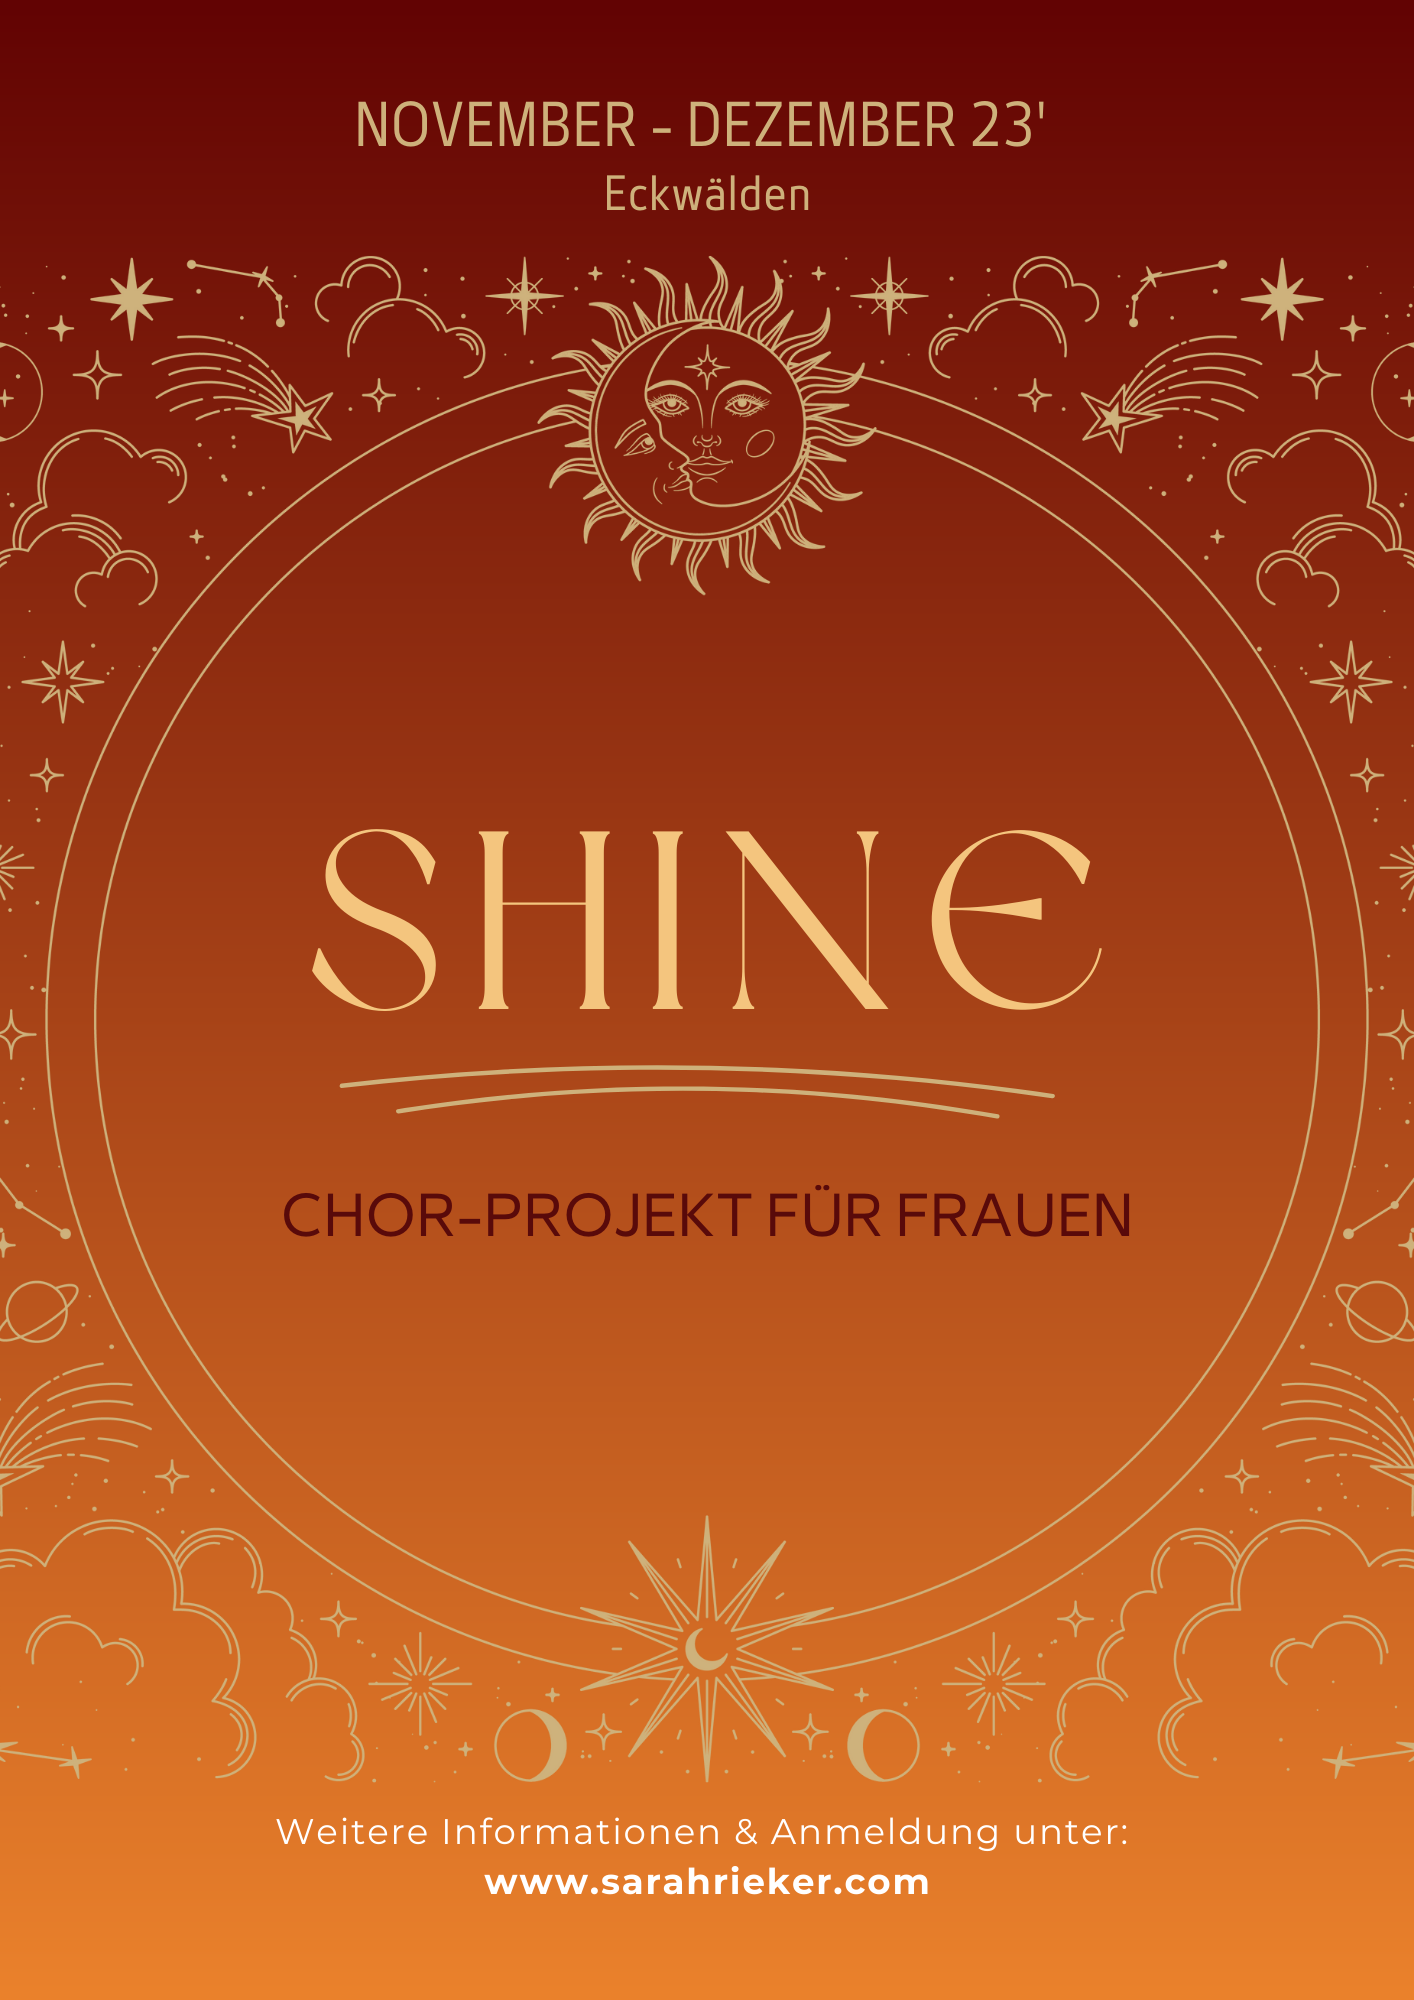 SHINE - Chorprojekt für Frauen im November & Dezember in Eckwälden